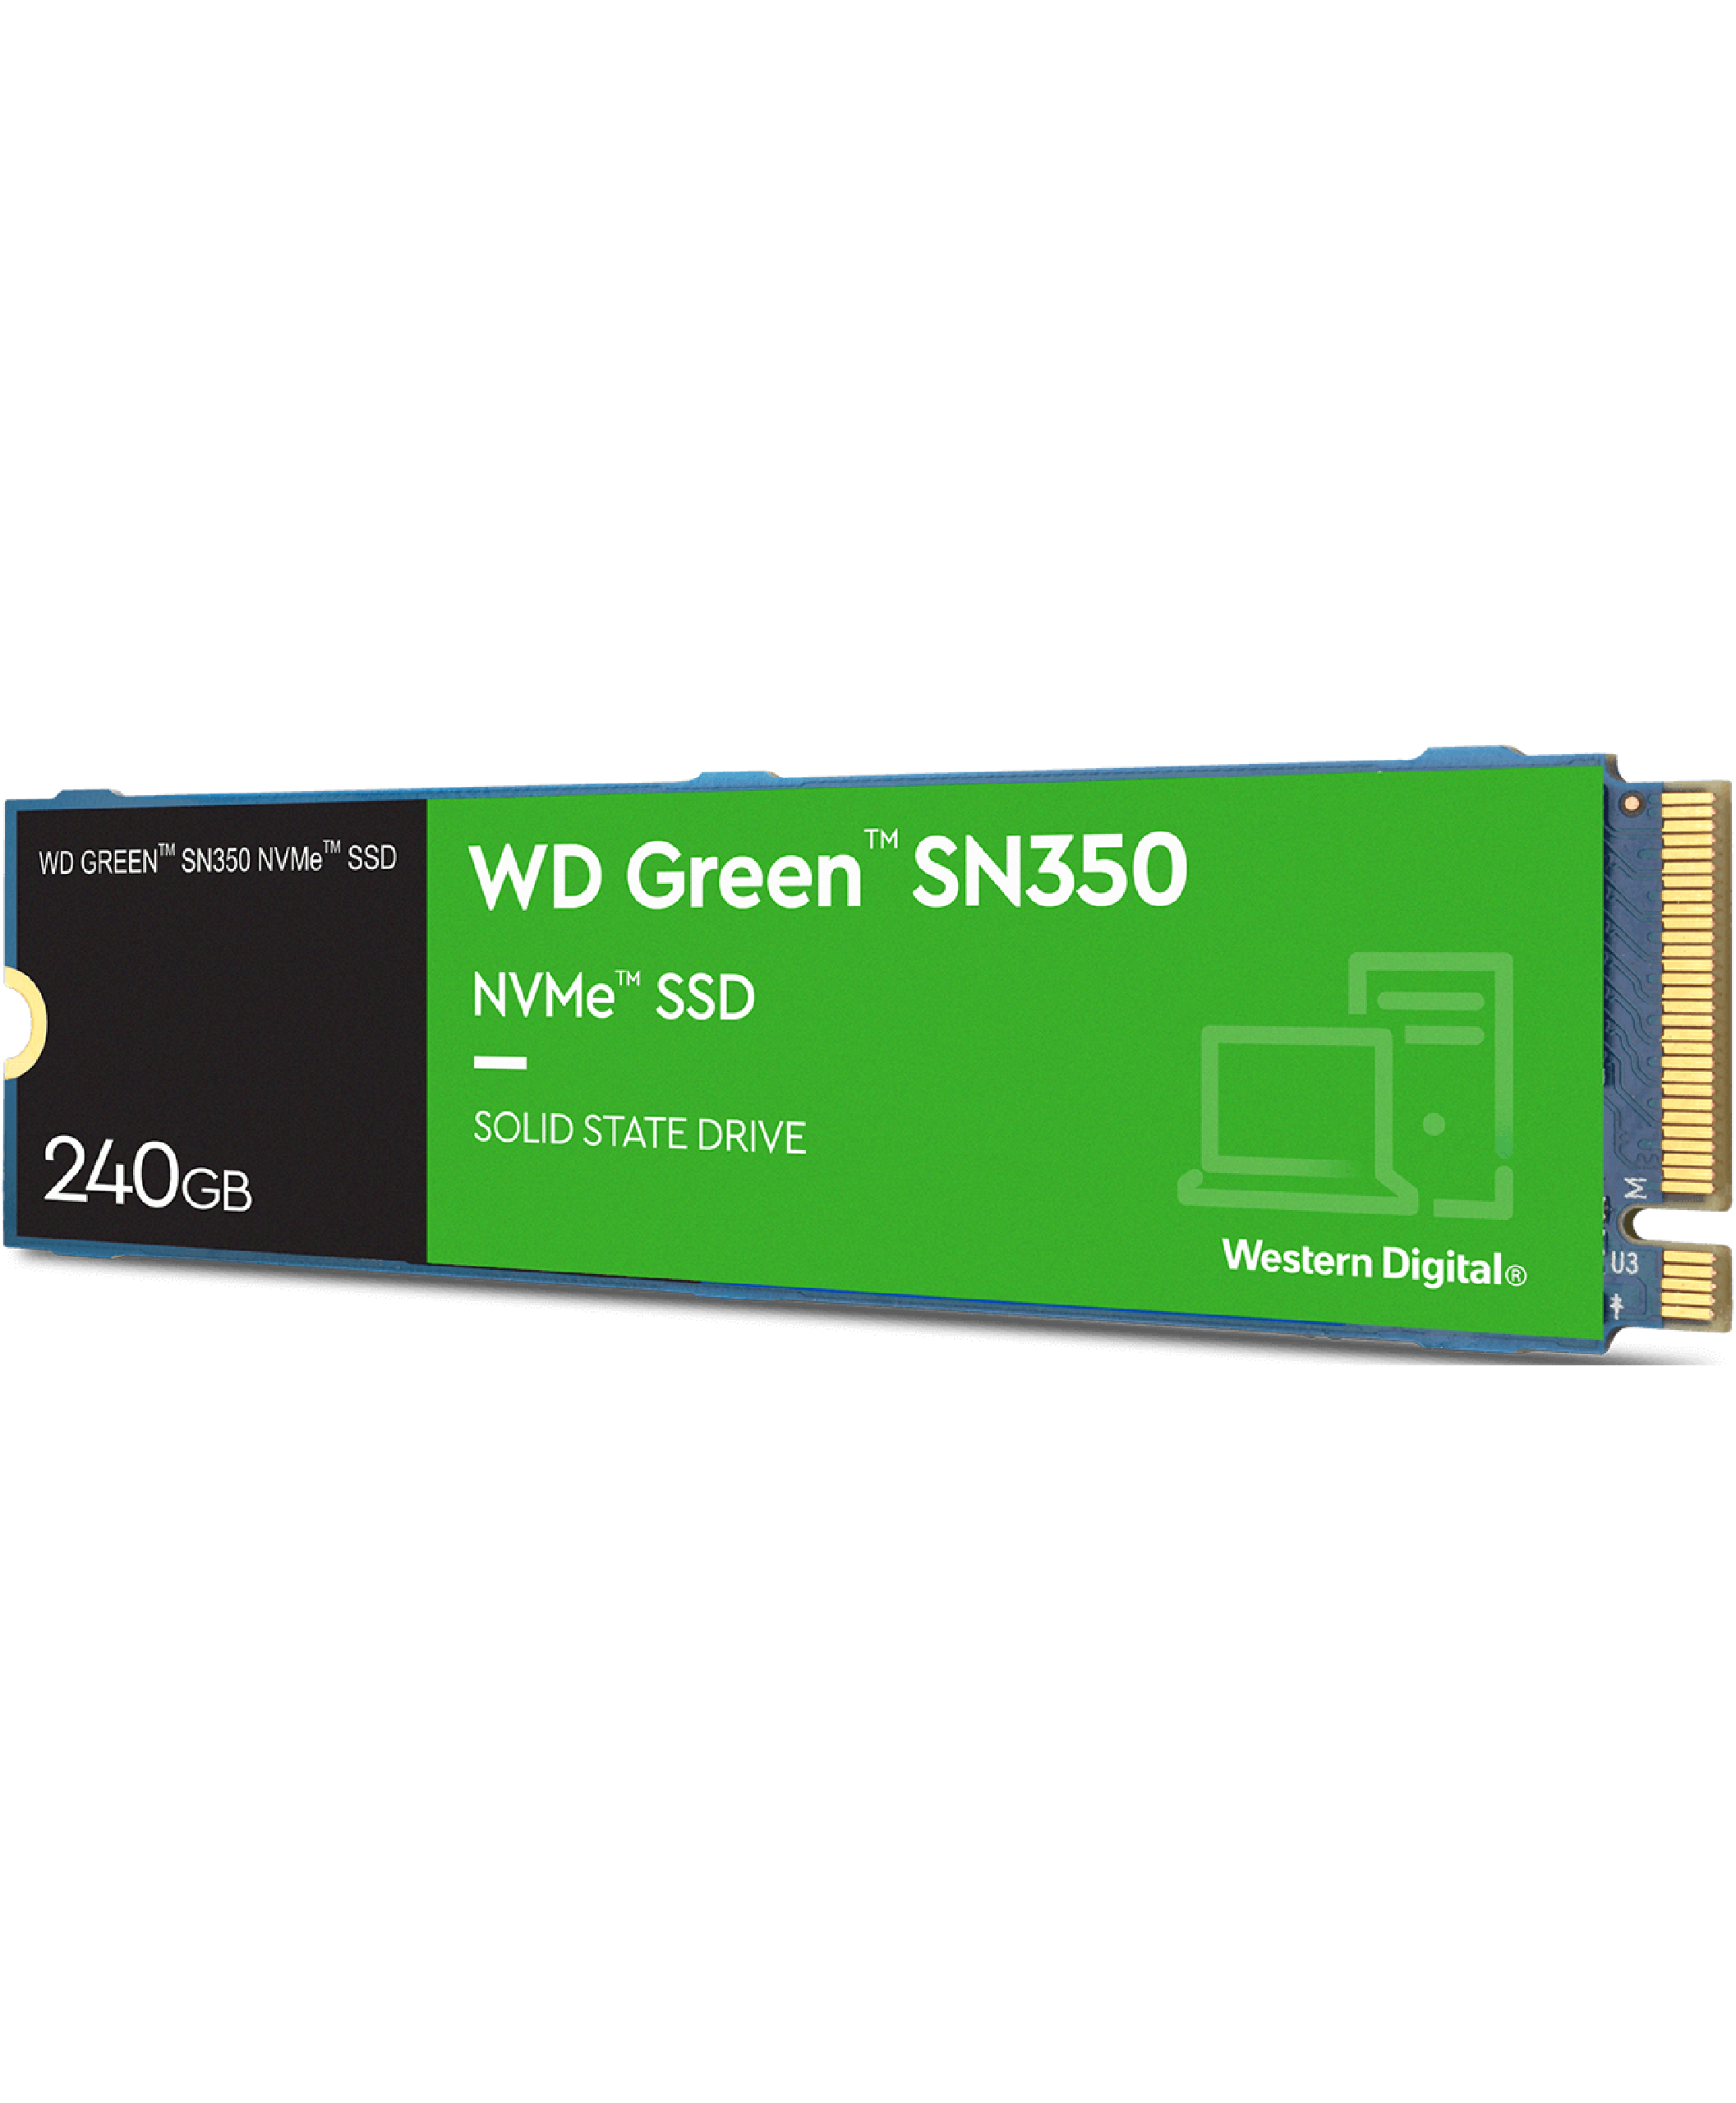 WD Green 240GB SN350